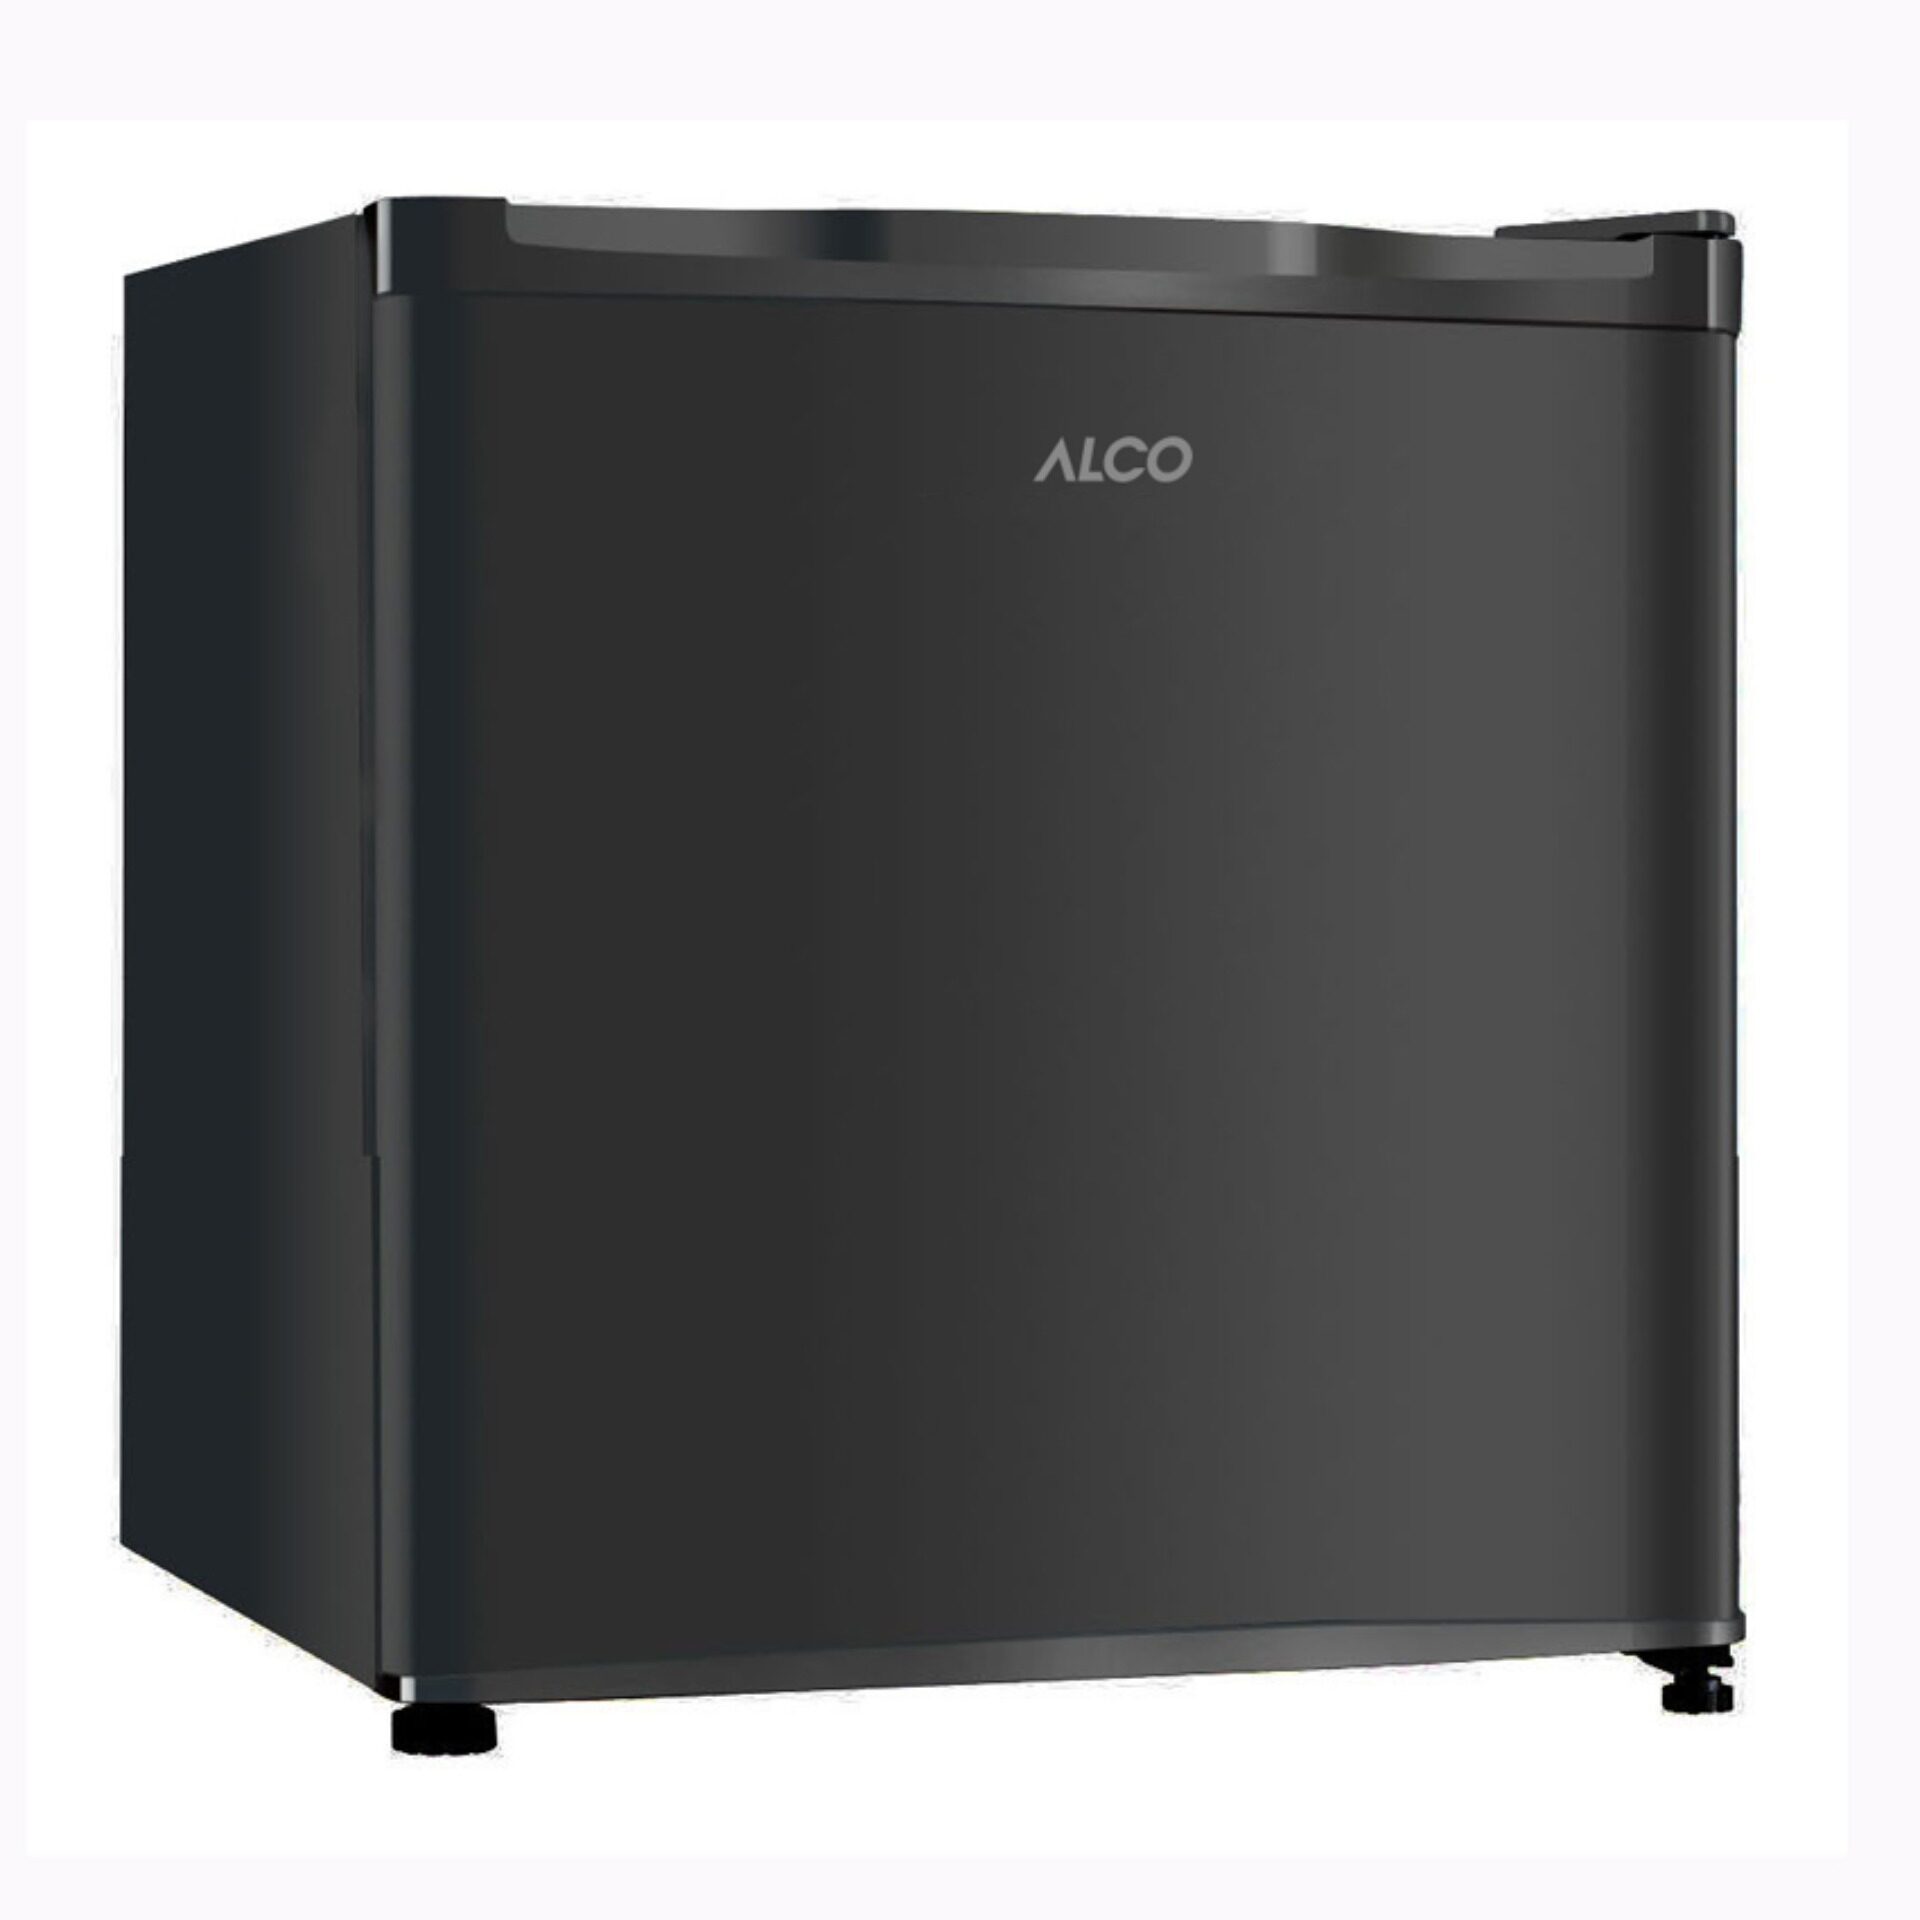 Alco ตู้เย็นมินิบาร์ ขนาด 1.7 คิว รุ่น AN-FR468 Black